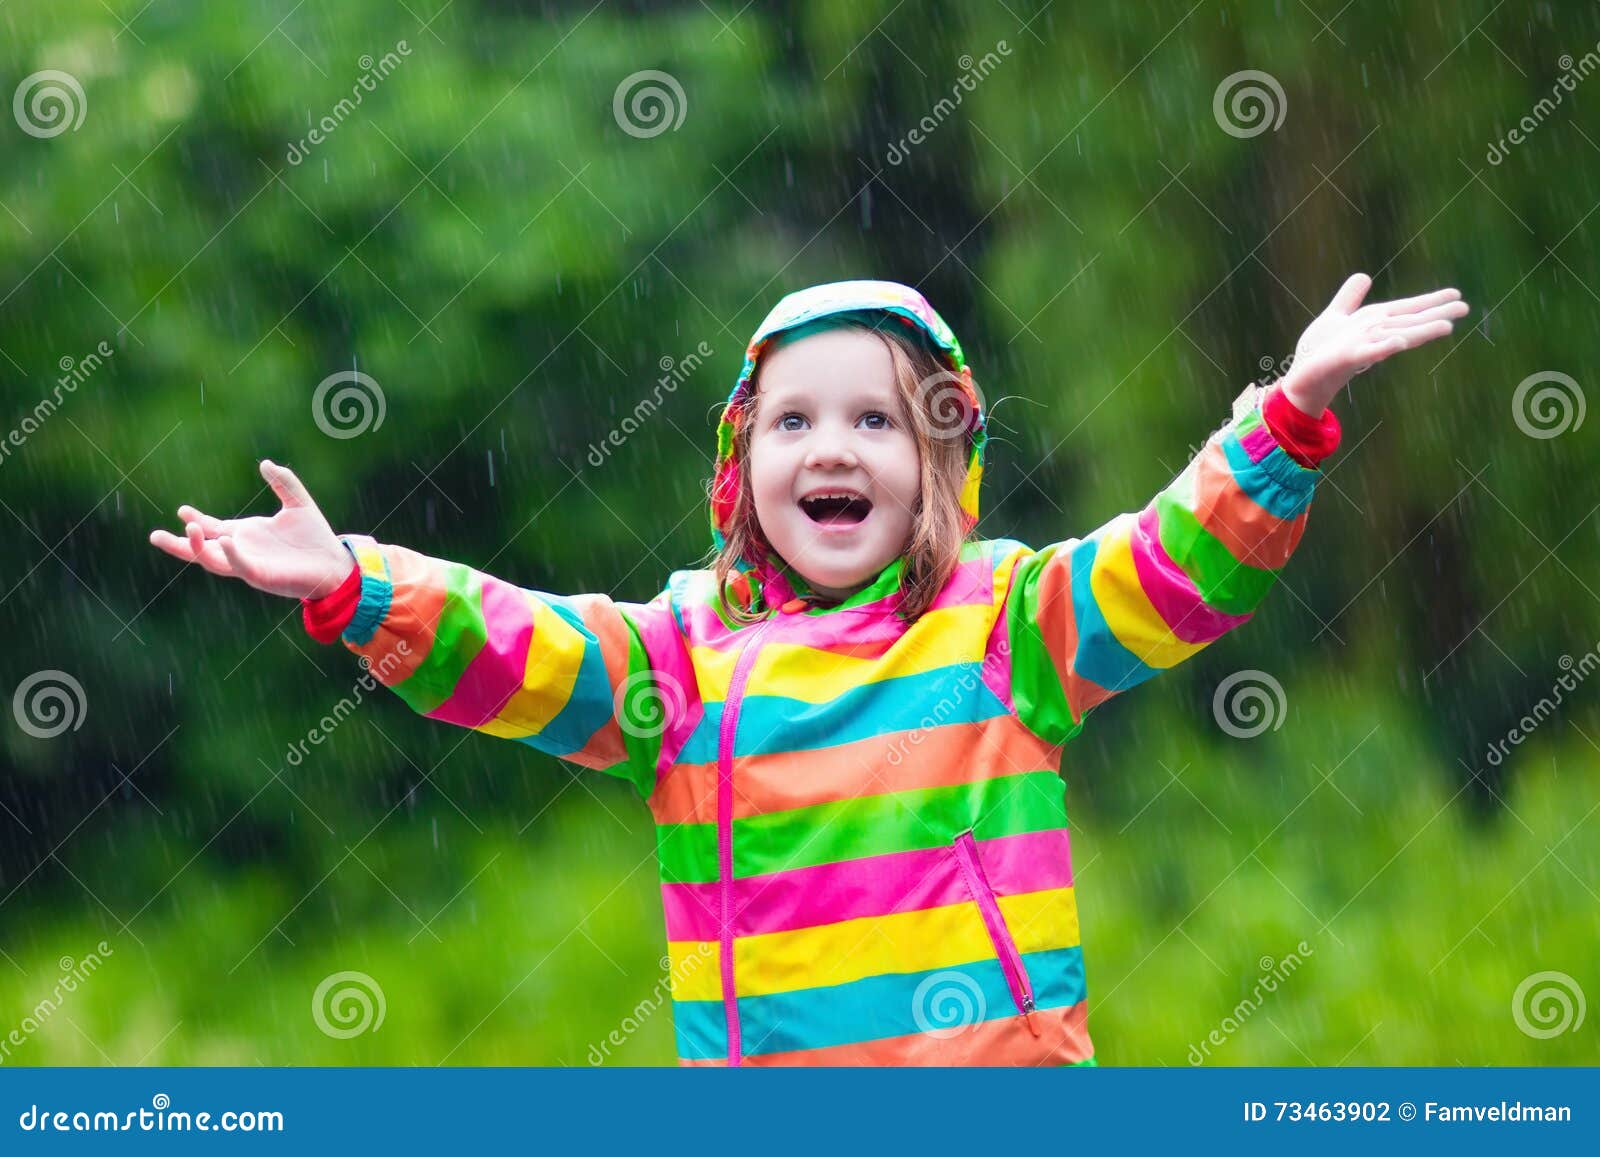 使用在雨中的小女孩在秋天 库存图片. 图片 包括有 逗人喜爱, 女孩, 幸福, 礼服, 婴孩, 室外, 槭树 - 57178675